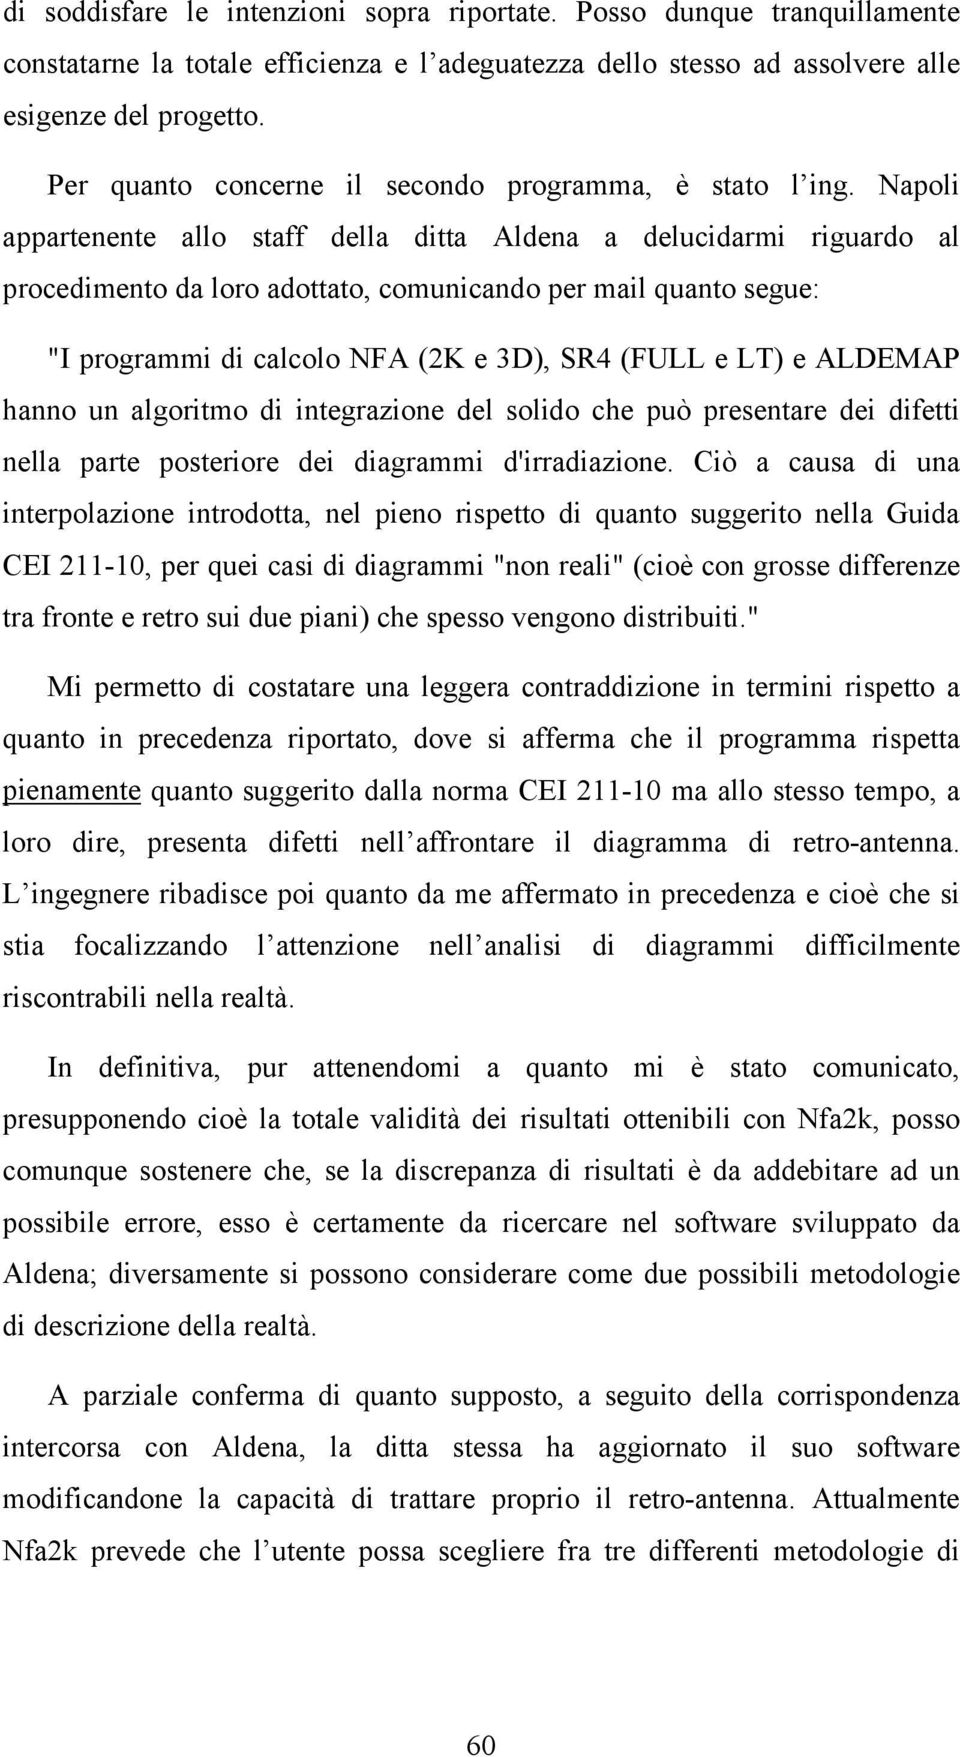 Napoli appartenente allo staff della ditta Aldena a delucidarmi riguardo al procedimento da loro adottato, comunicando per mail quanto segue: "I programmi di calcolo NFA (2K e 3D), SR4 (FU e T) e